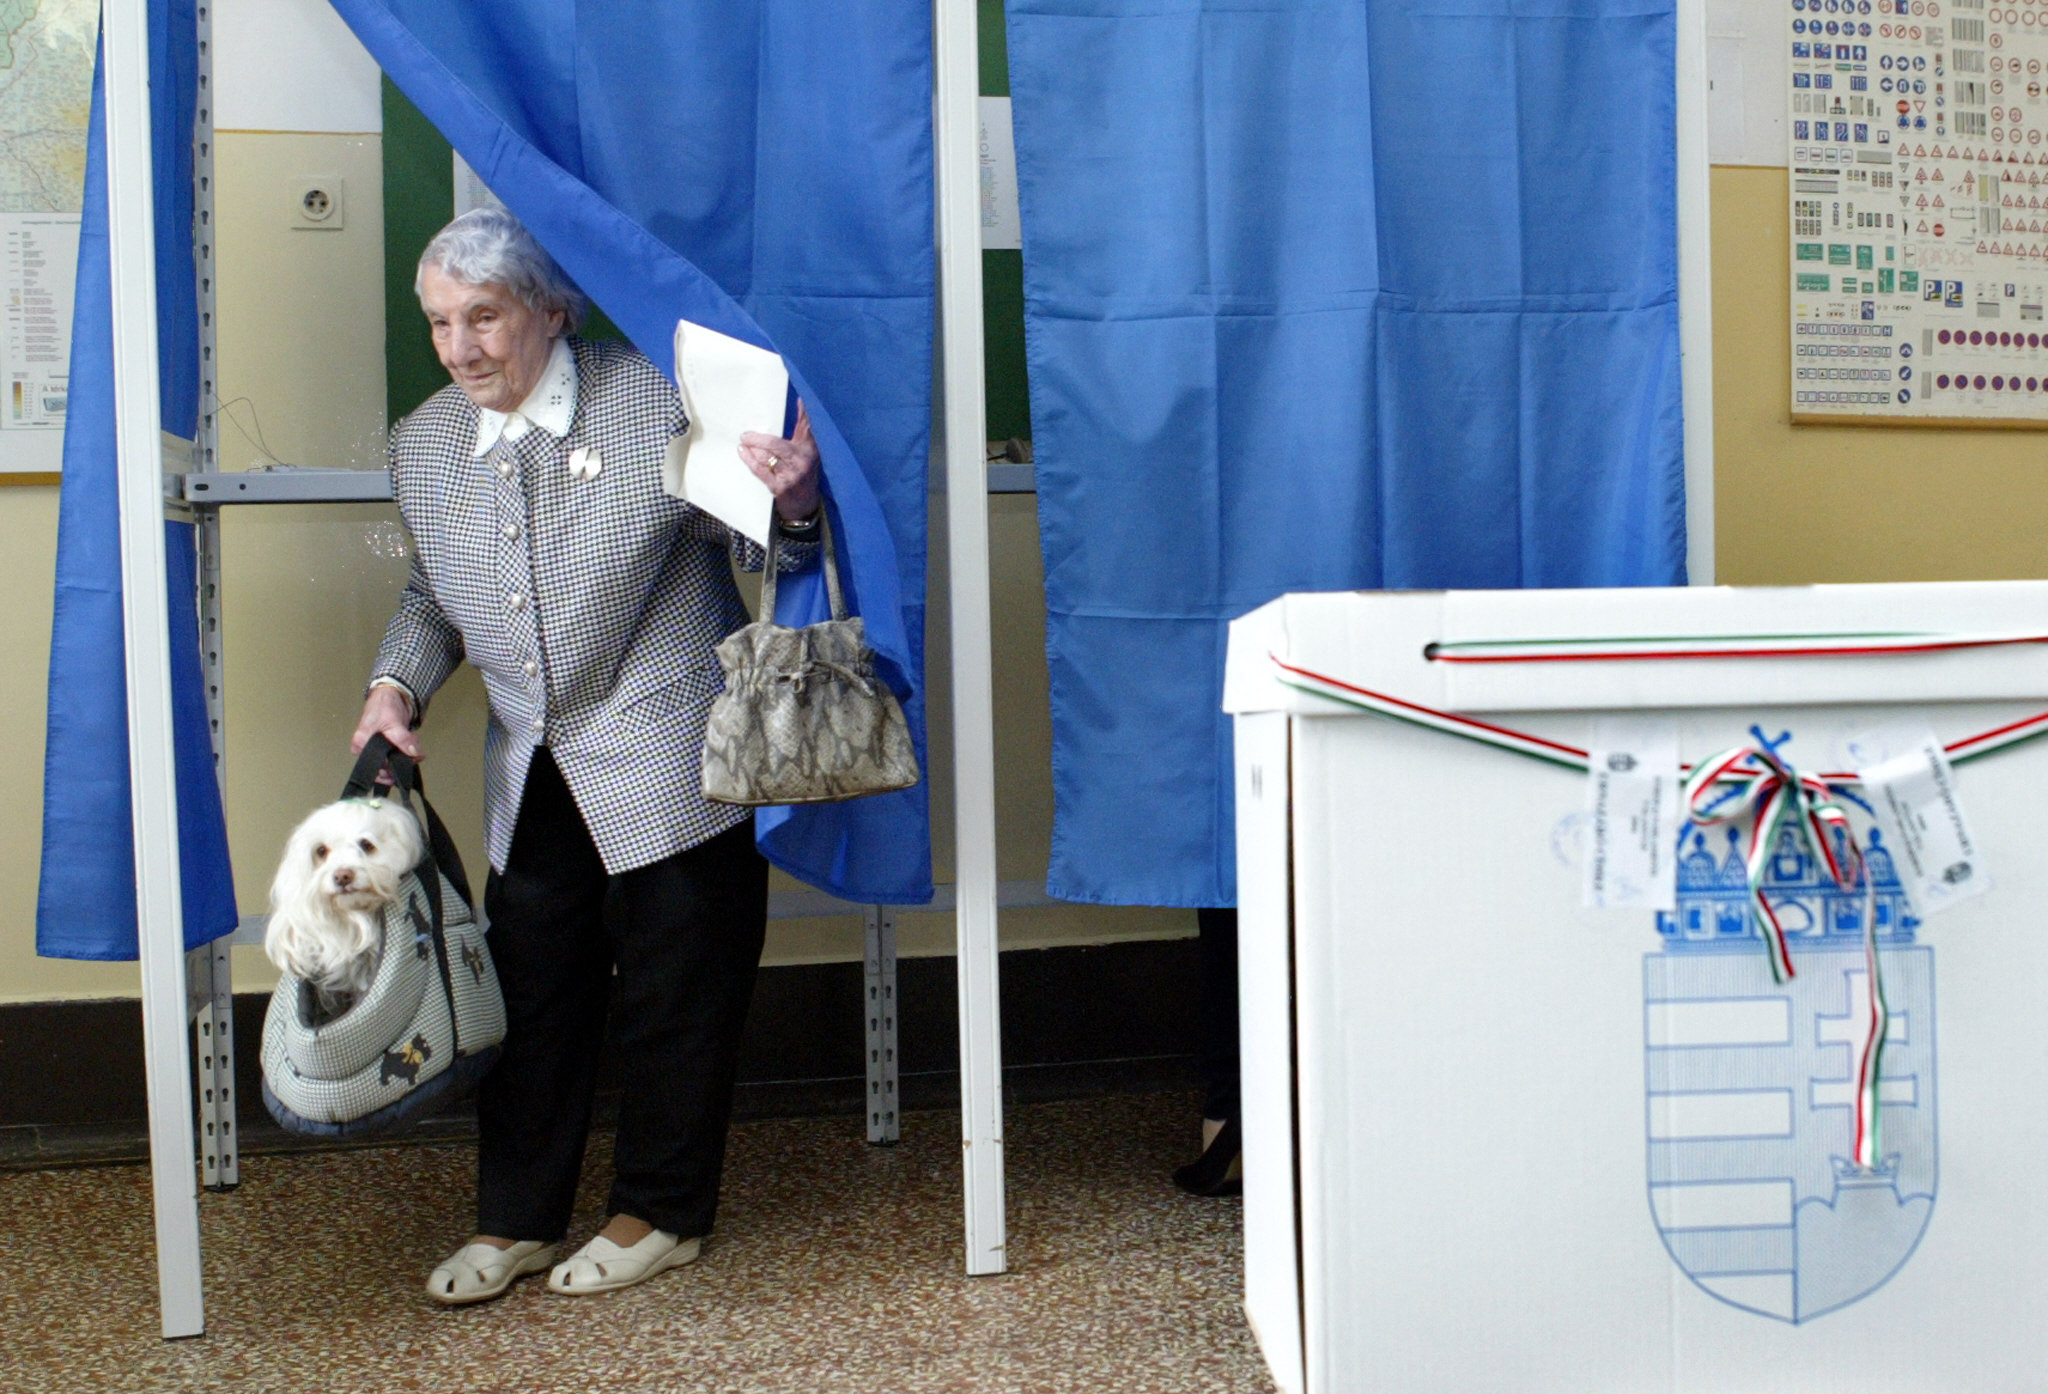 Már 3,5 millió forintot gyűjtöttek össze a civilek, akik közadakozásból segítenék az angliai magyarokat abban, hogy szavazhassanak